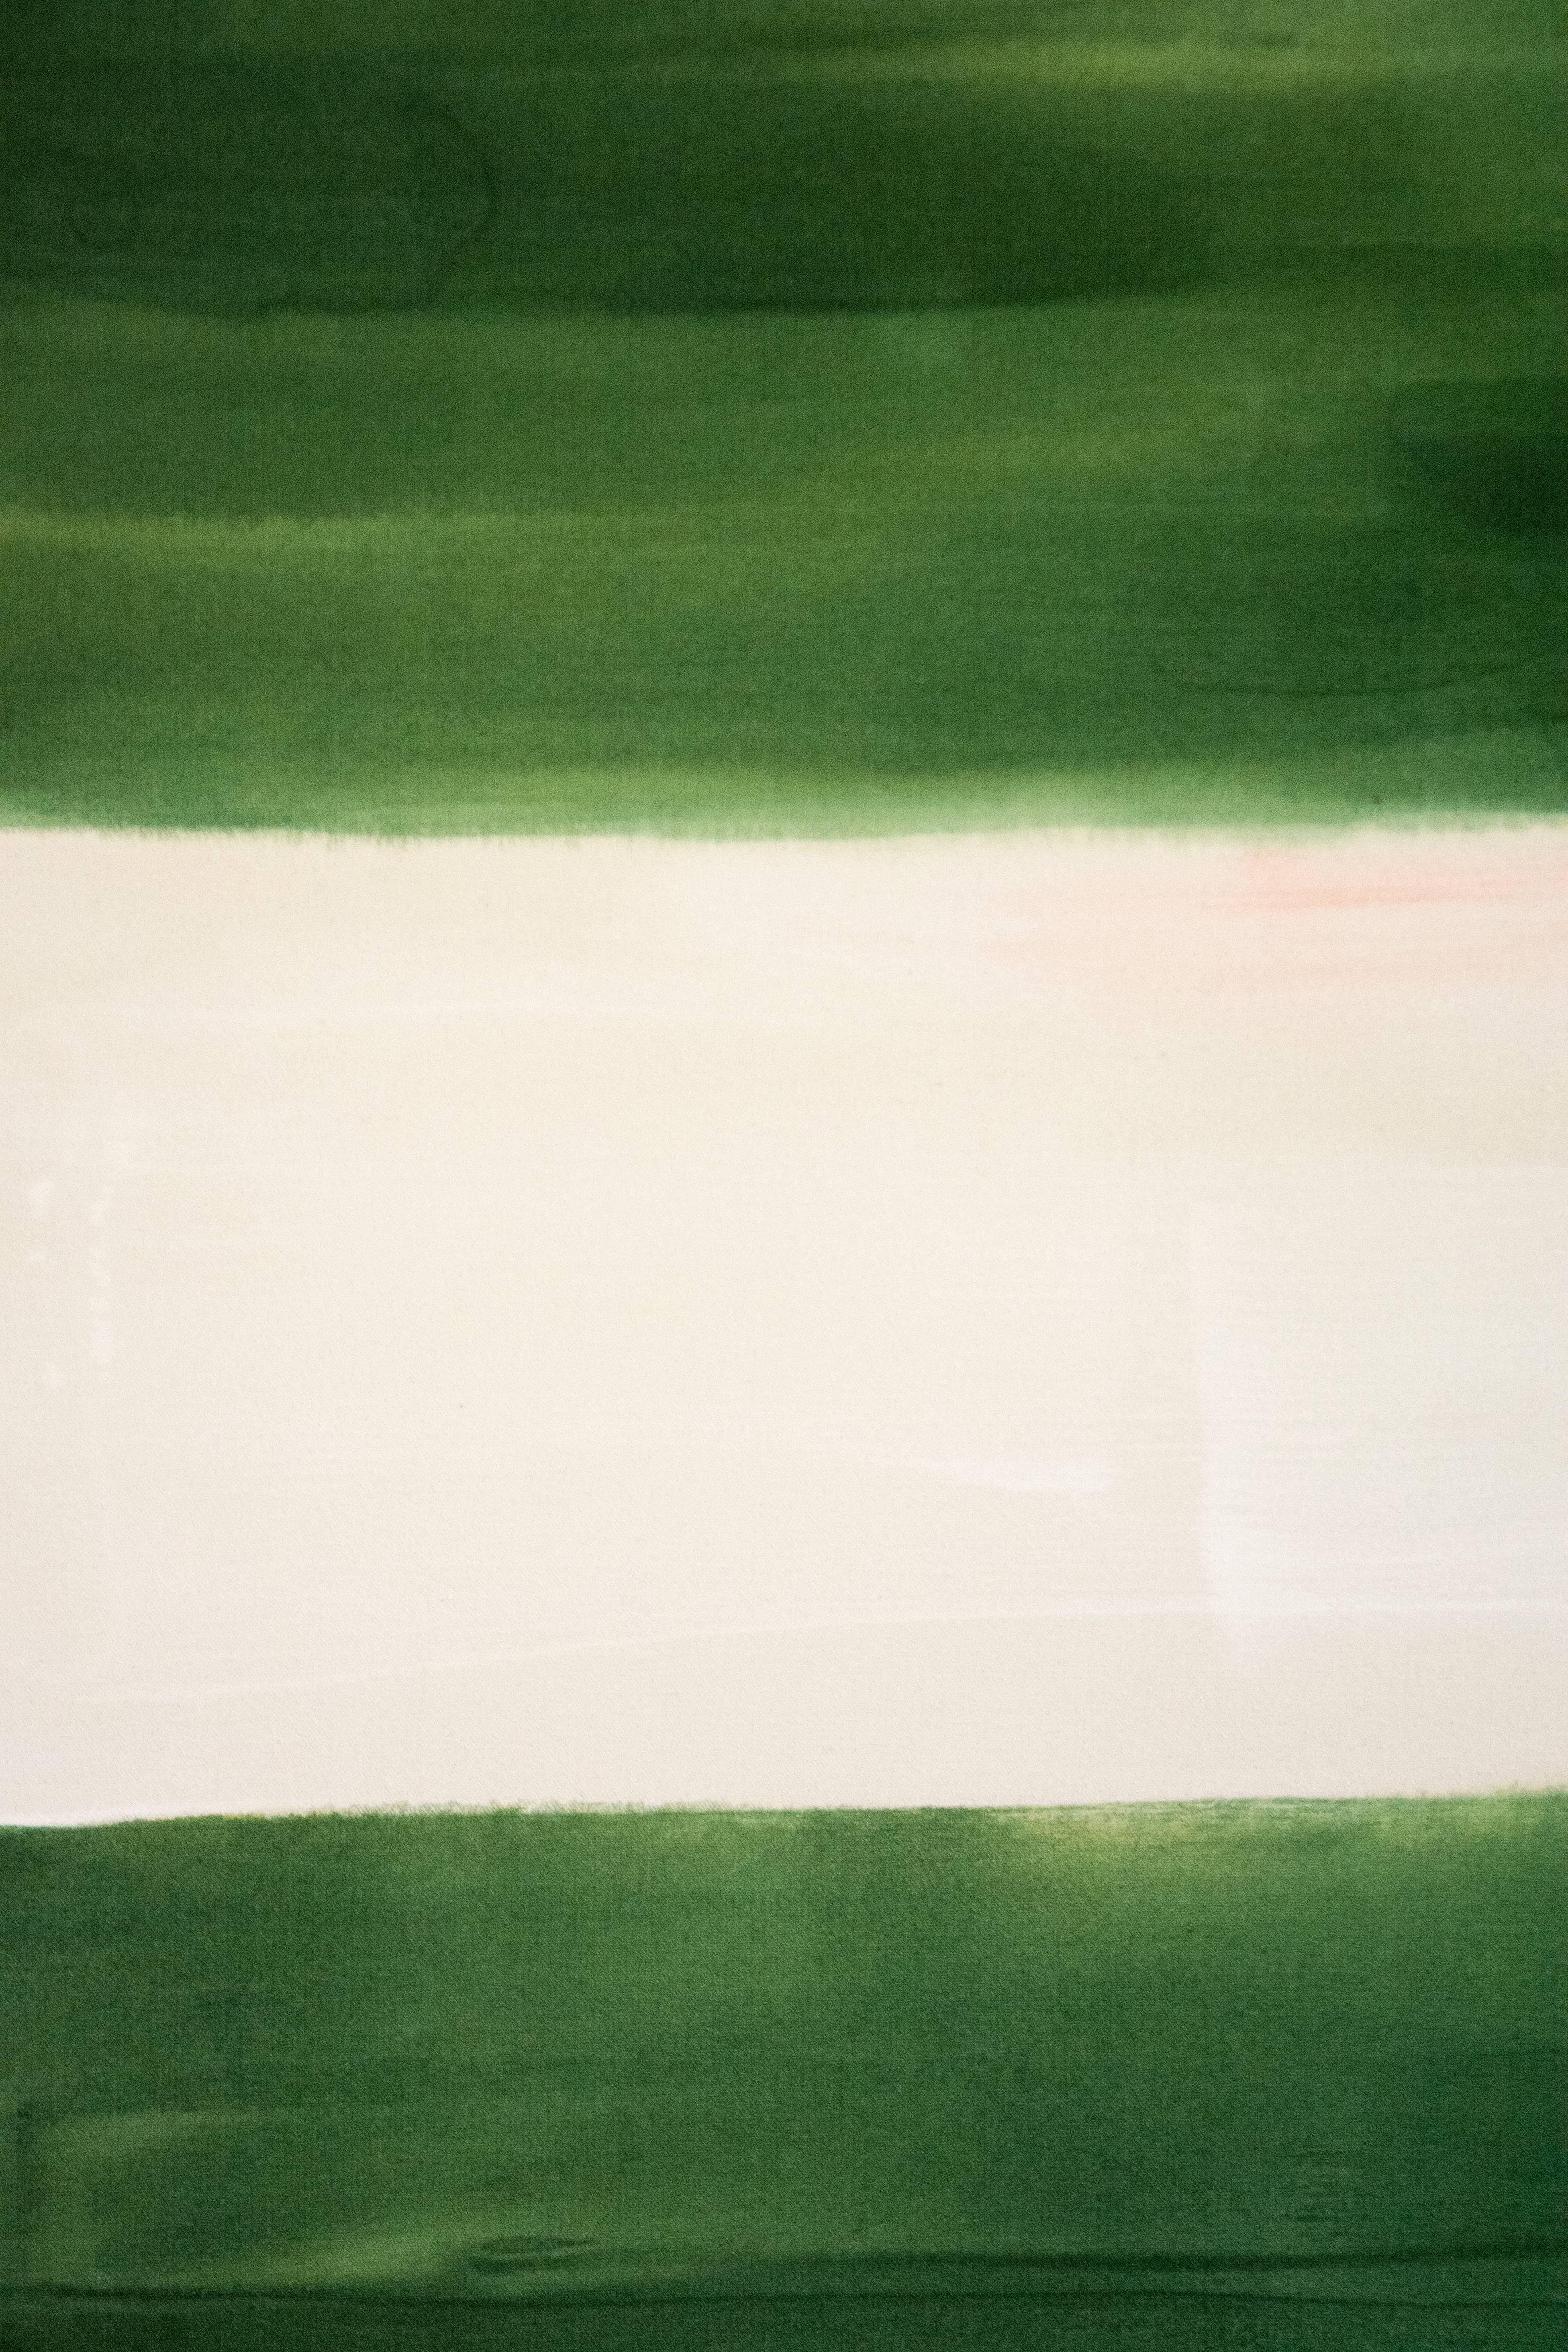 Judd - grande composition géométrique, bleue, verte, abstraite, acrylique sur toile - Noir Abstract Painting par Milly Ristvedt